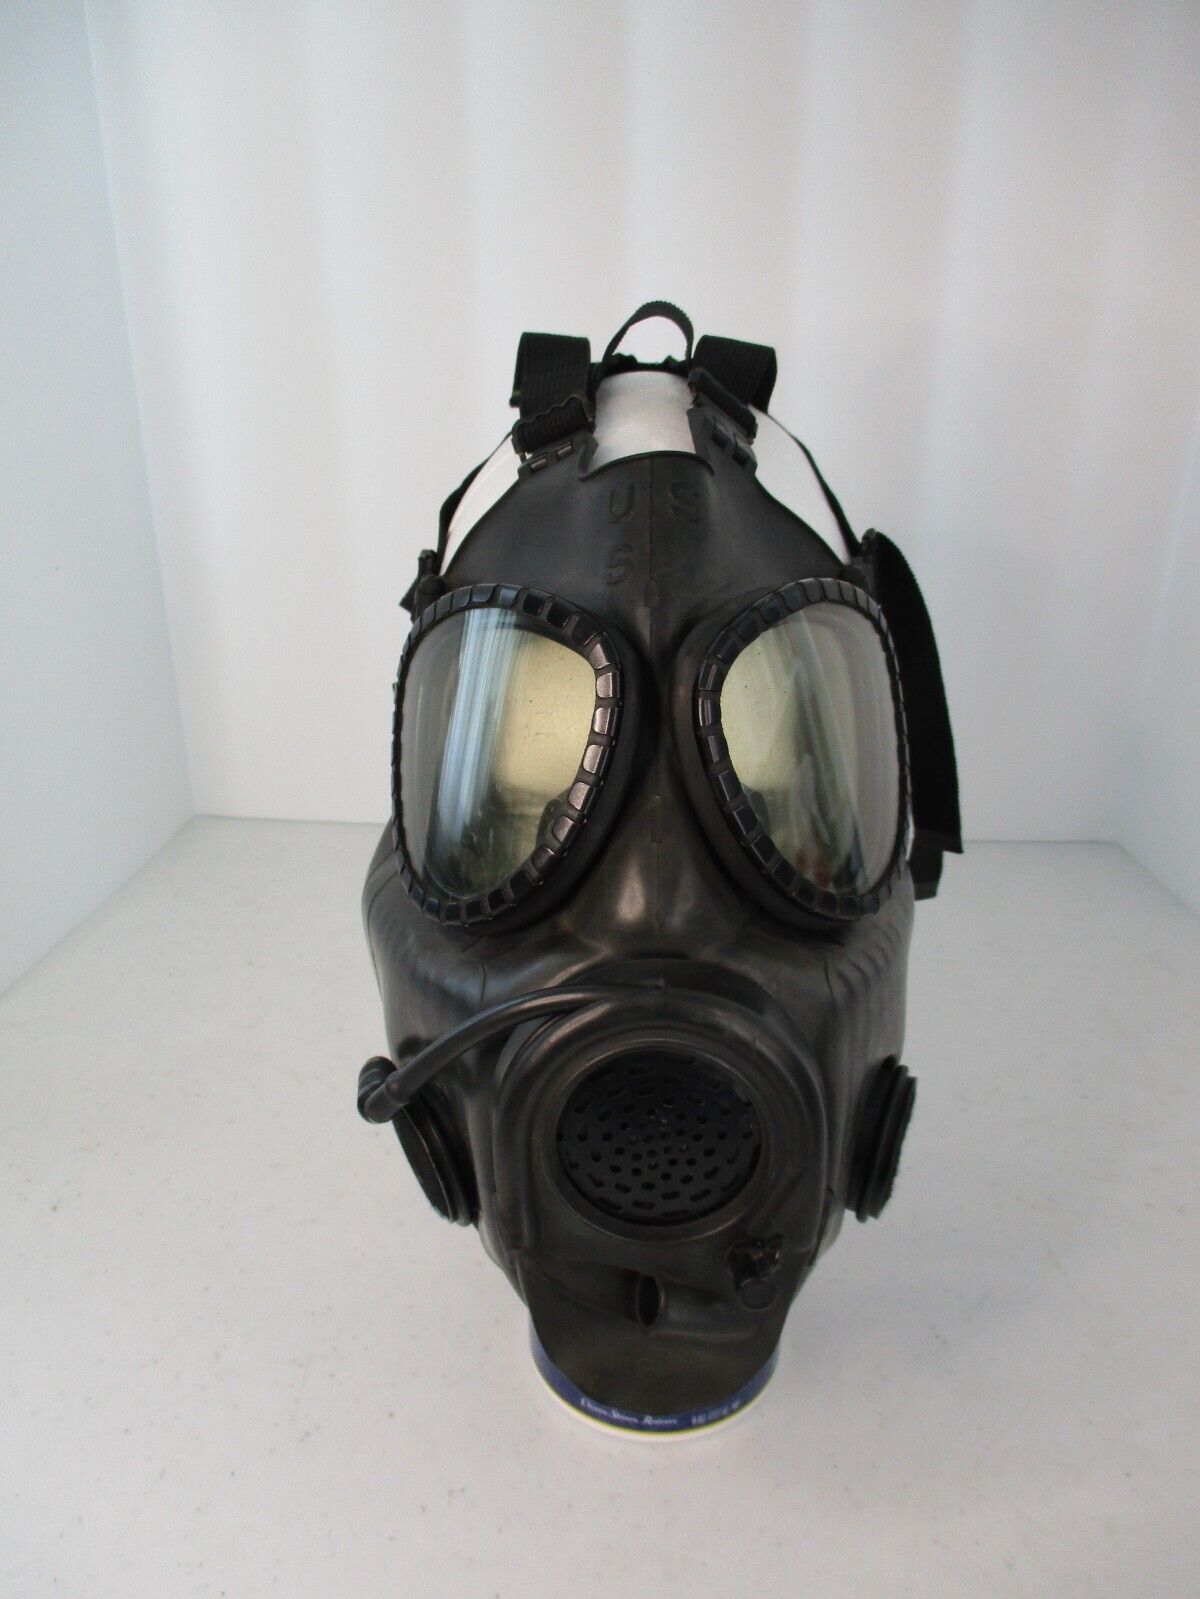 Vintage US Military Black Chemical Biological Gas Mask Model 84-MSA-2E27